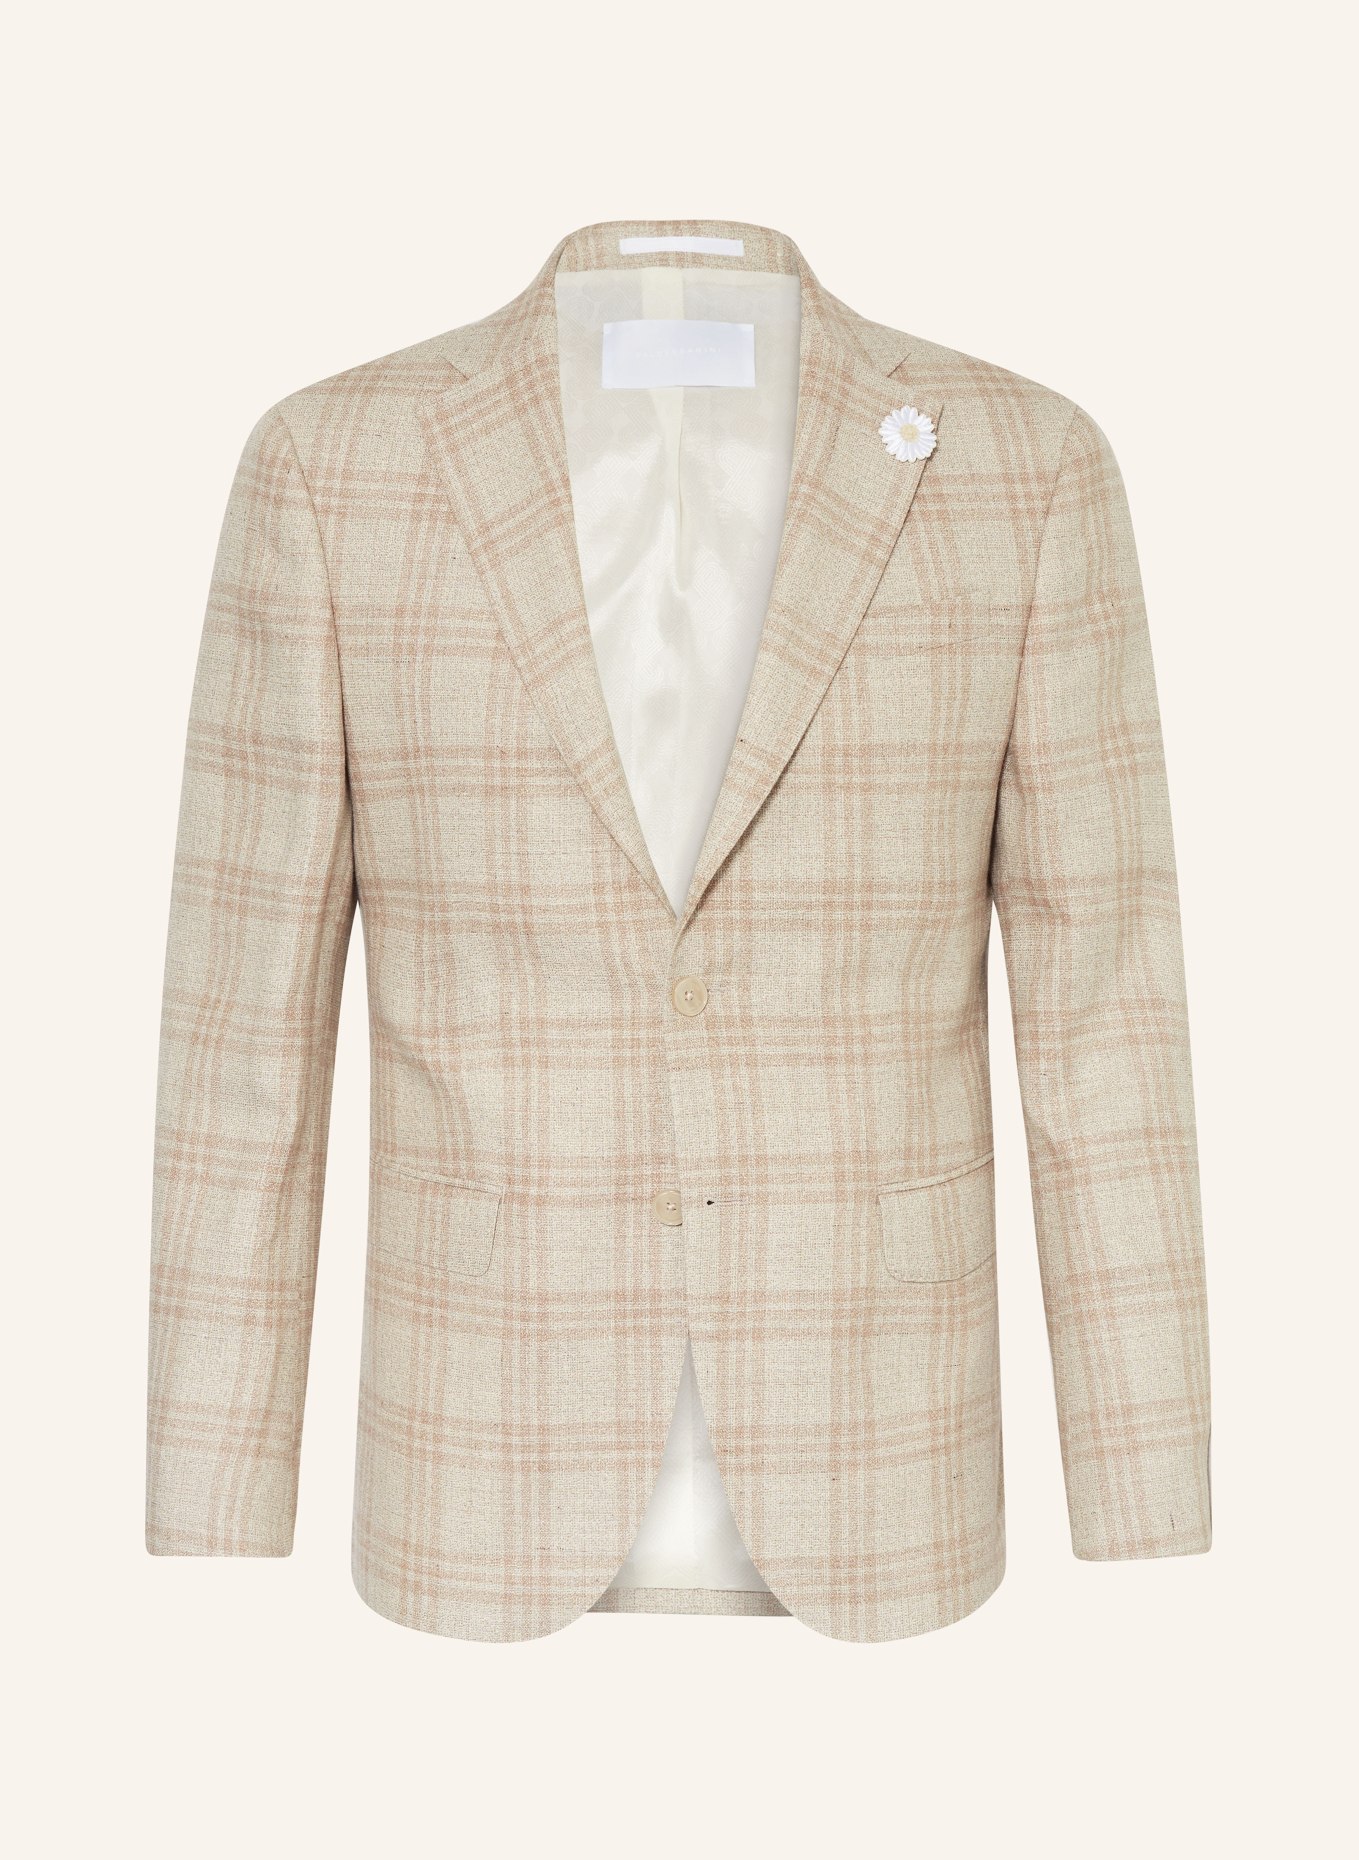 BALDESSARINI Suit jacket SERANO slim fit, Color: 8620 Irish Cream Check (Image 1)